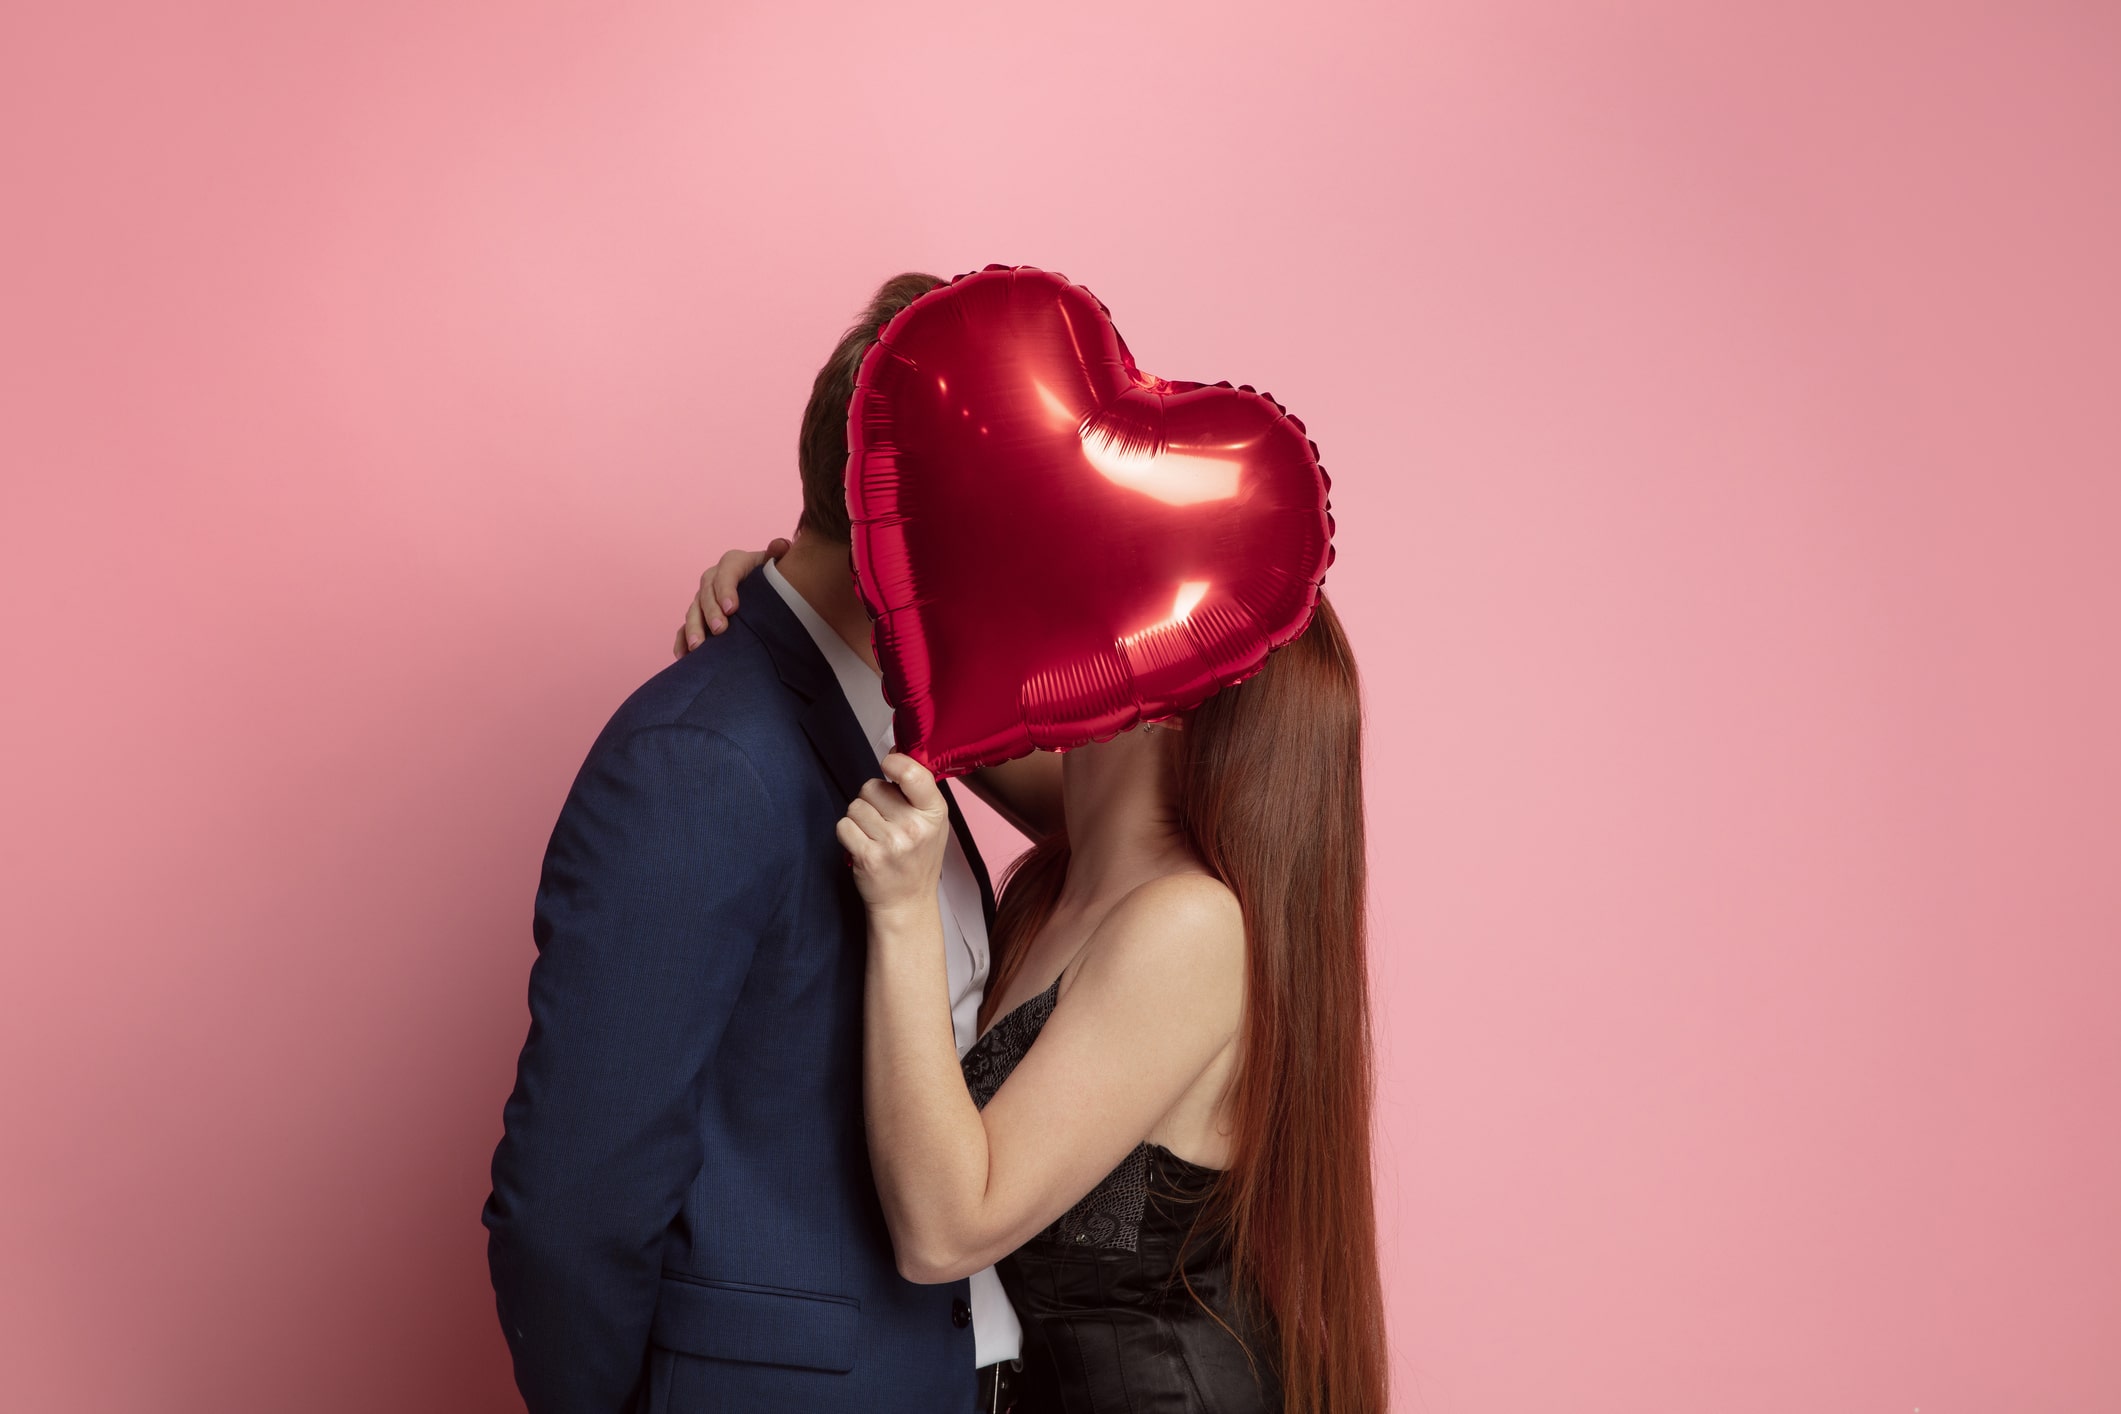 Les 10 idées de cadeaux de St Valentin pour hommes les plus originales